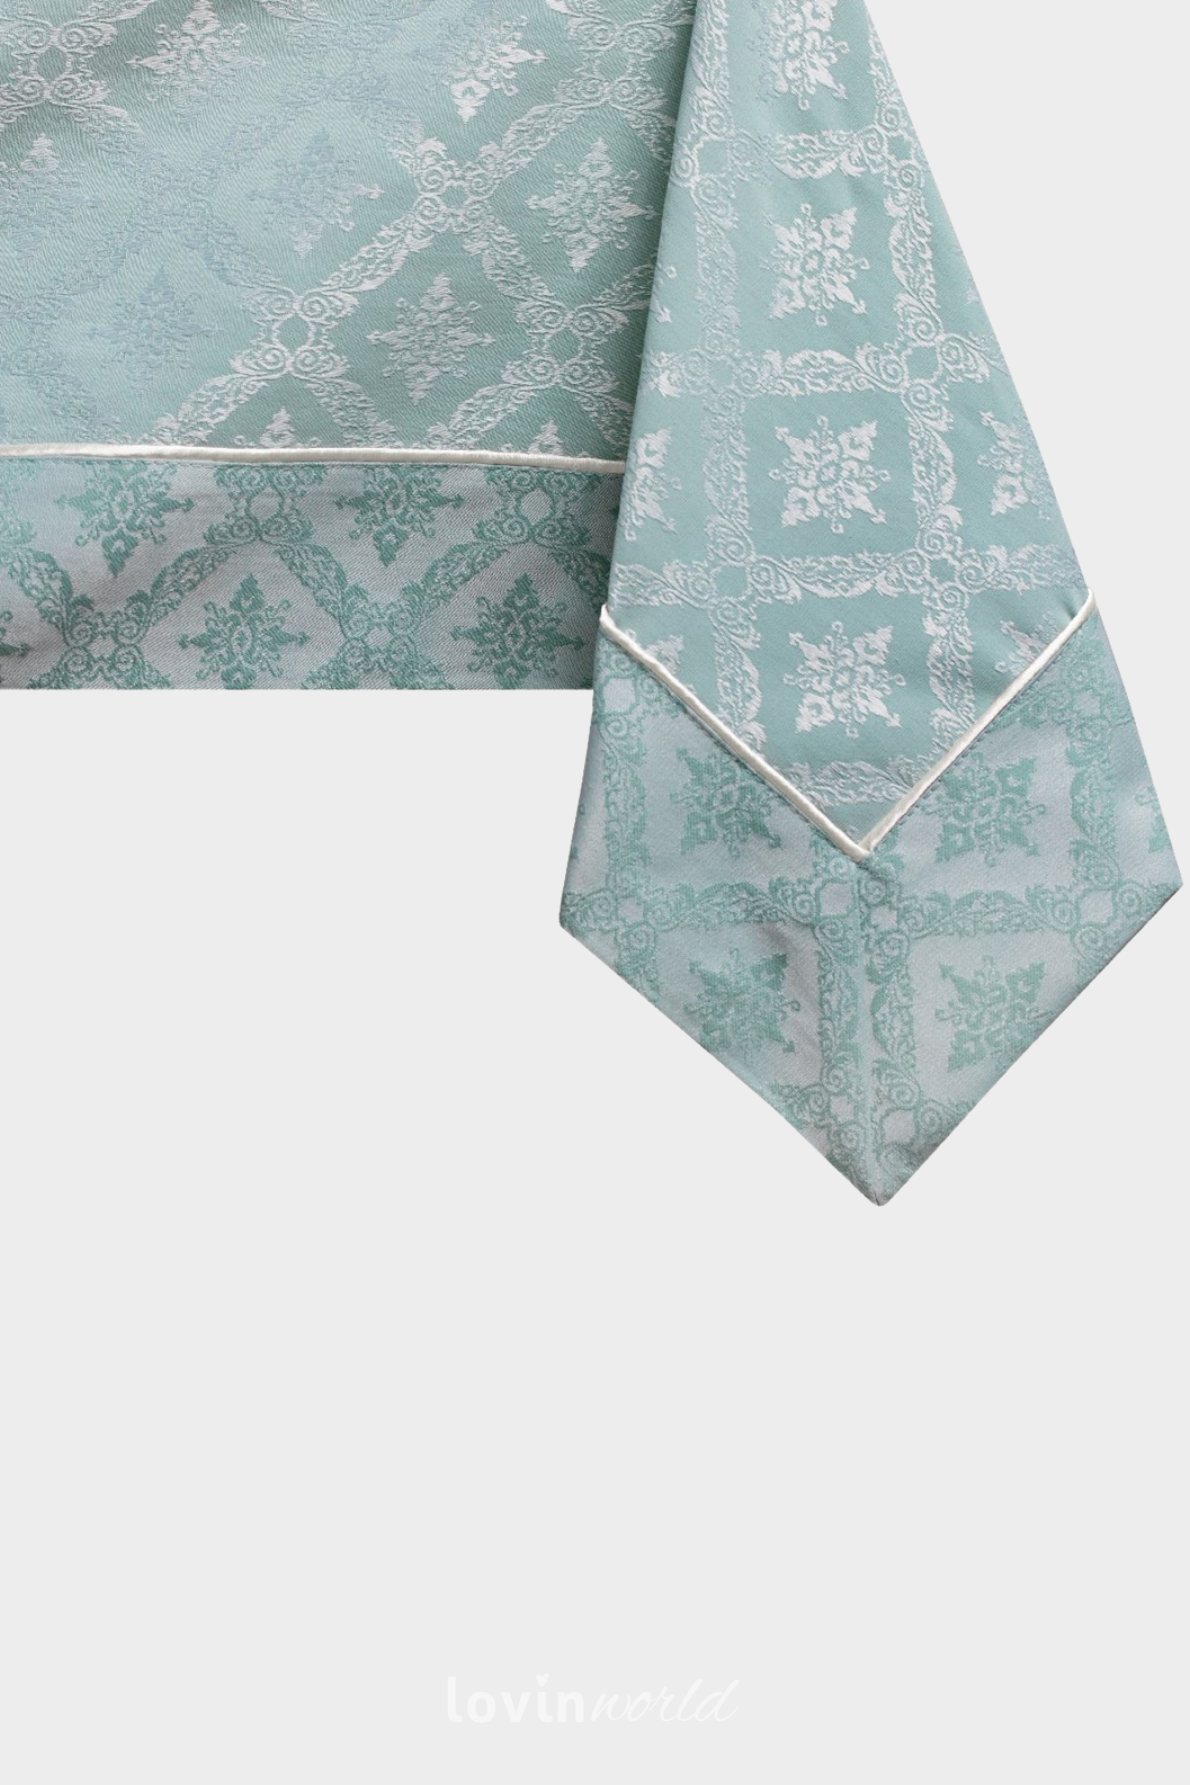 Tovaglia Maya in cotone con stampa e orletto, colore menta-1